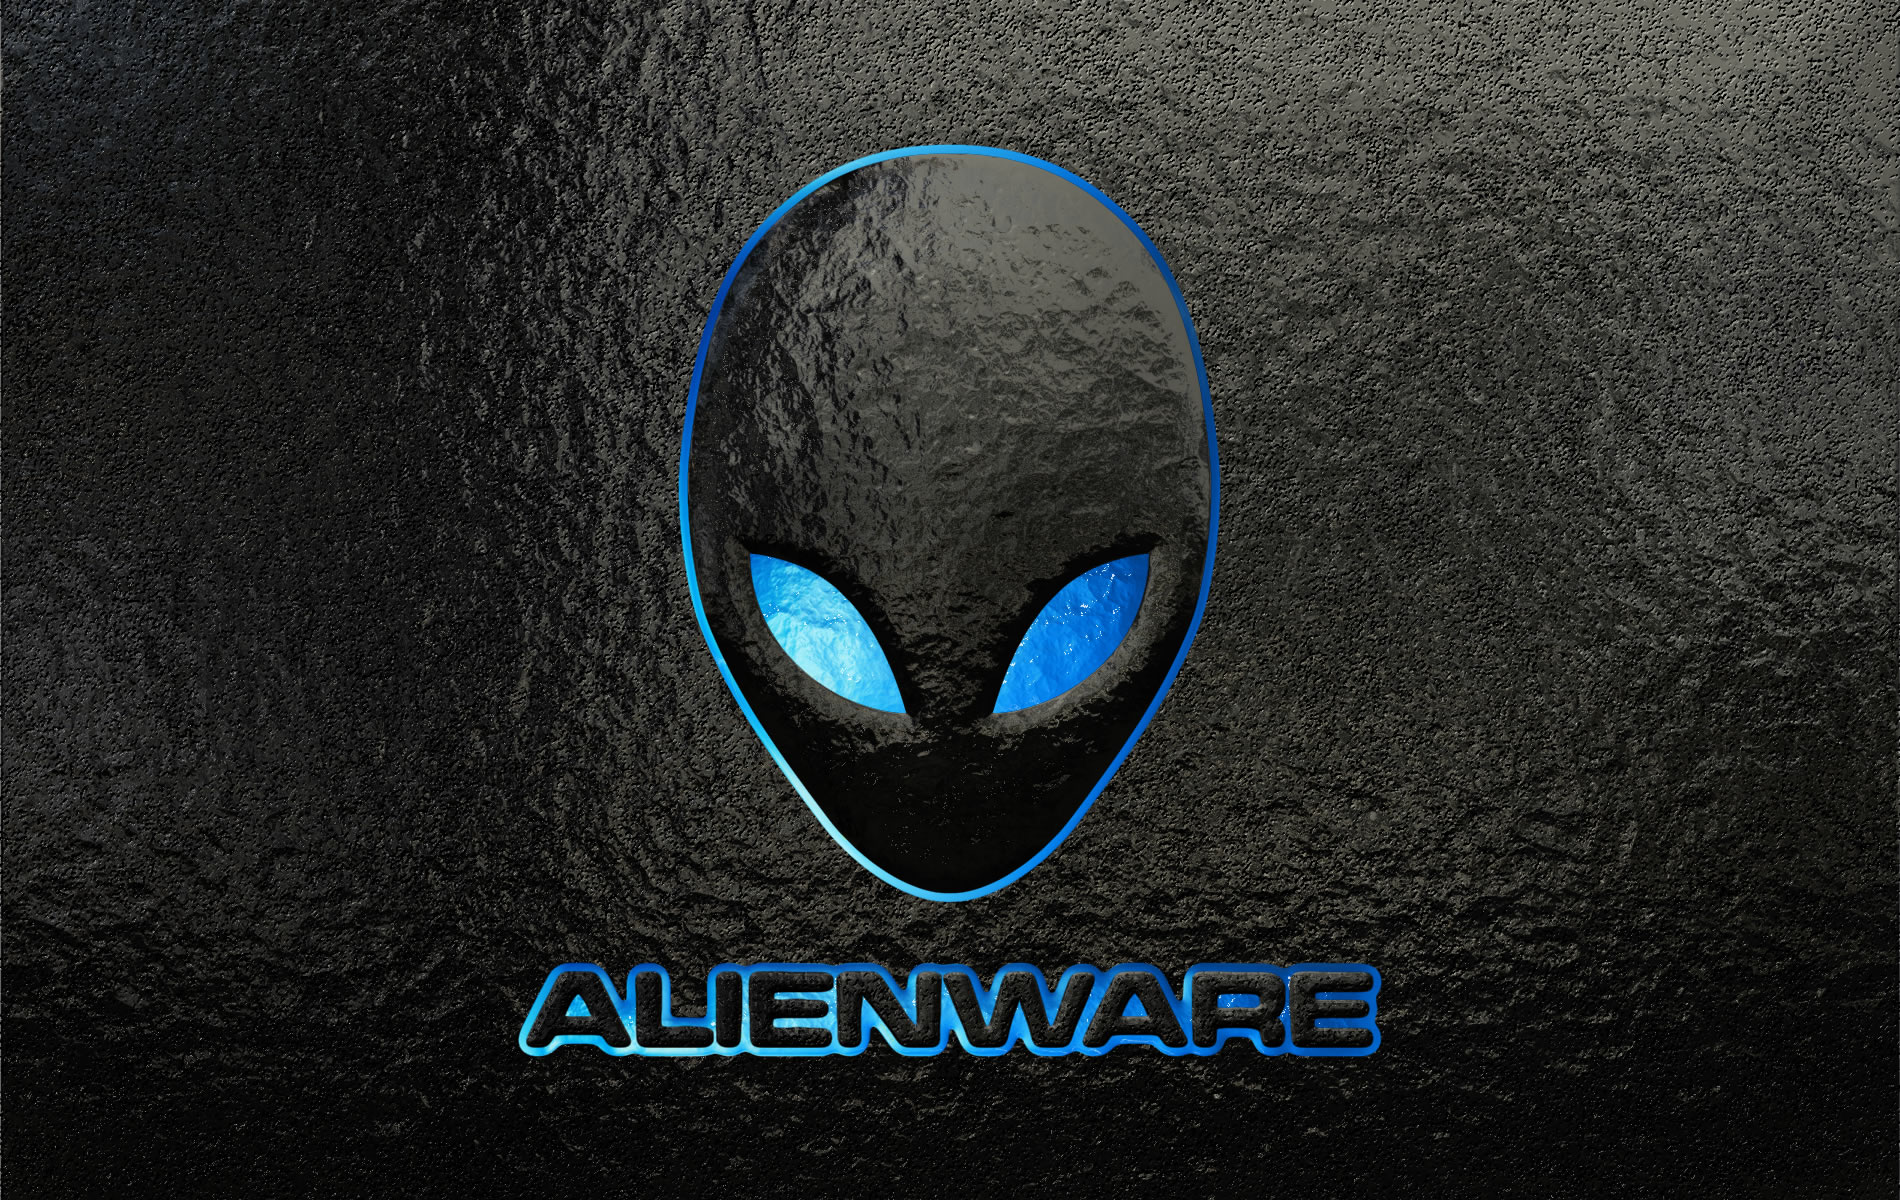 Alienware Hd 4K Wallpapers